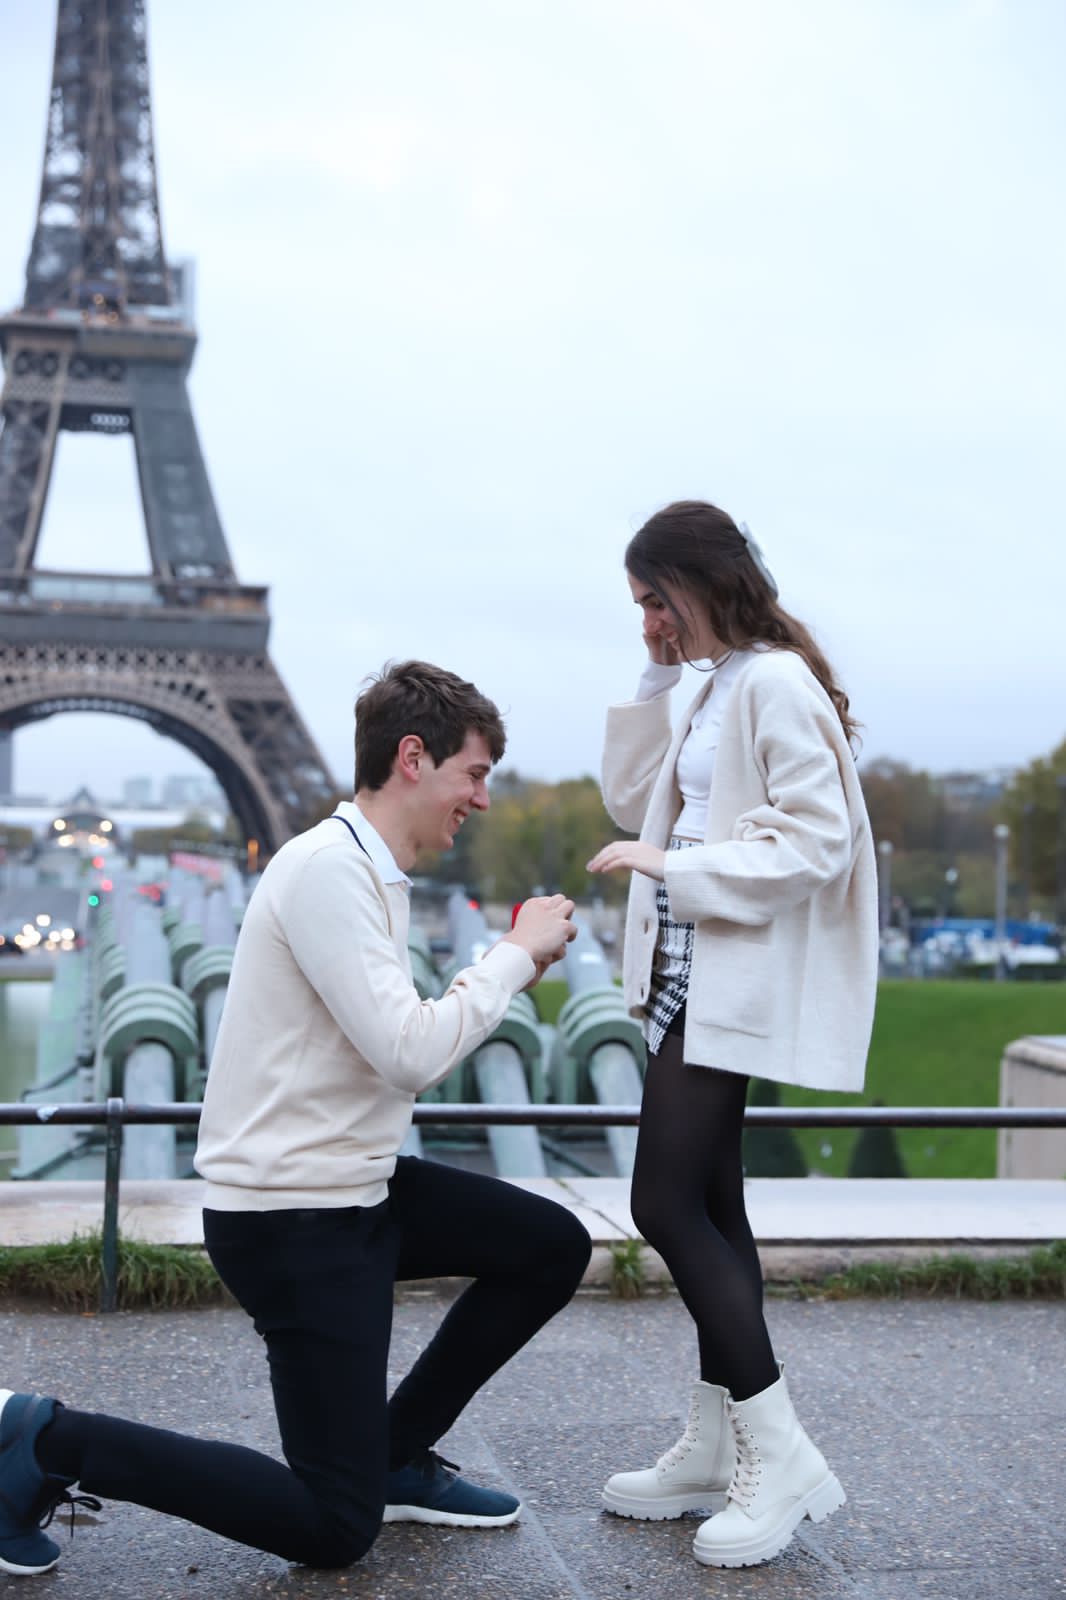 Funenses dieron el "Sí" en París: una propuesta soñada en la ciudad del amor